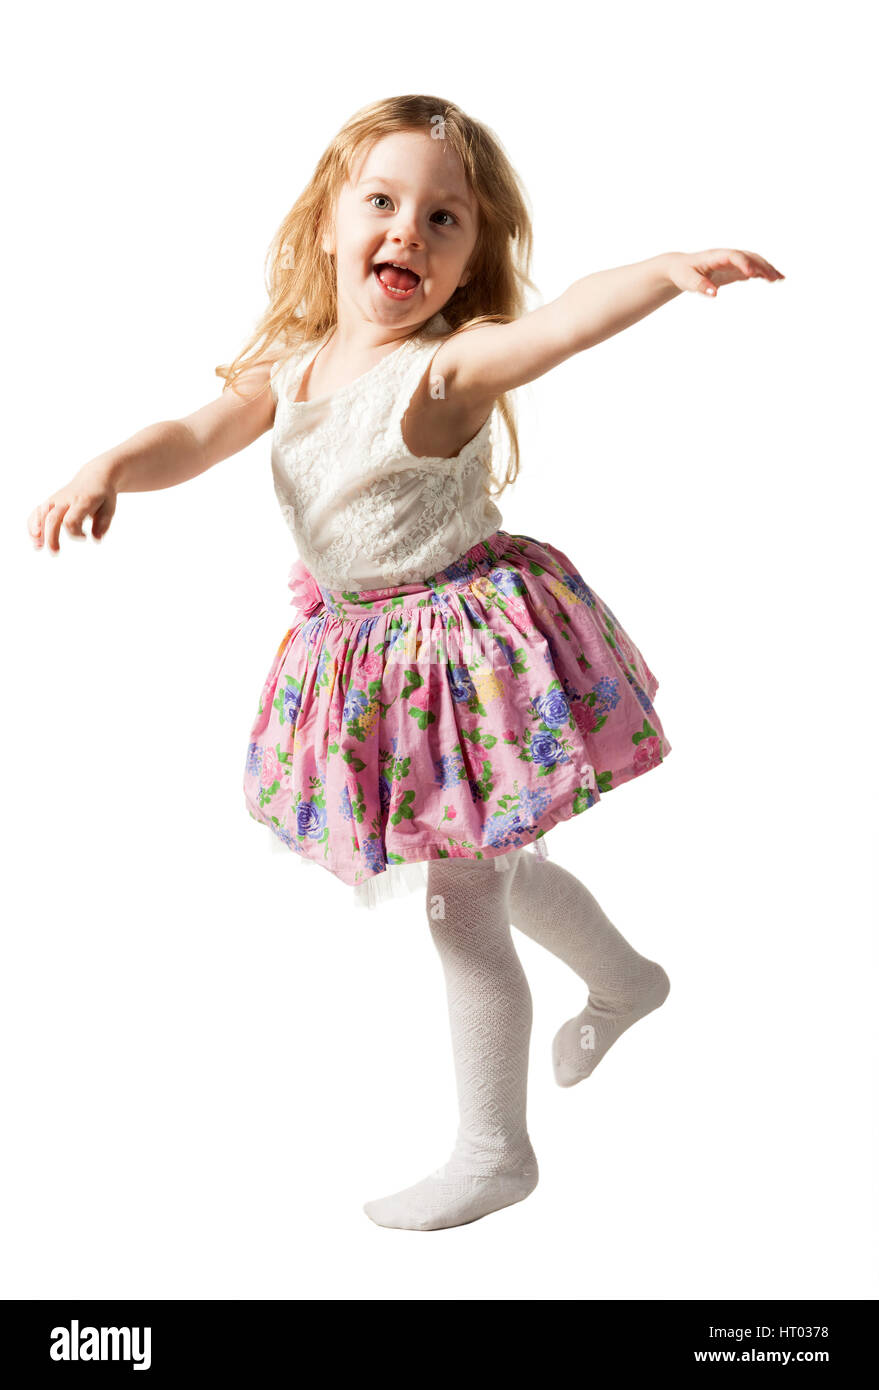 Carino tre-anno ragazza è jumping, acceso, dancing, ridendo. I suoi capelli non pettinati.I solated su sfondo bianco Foto Stock